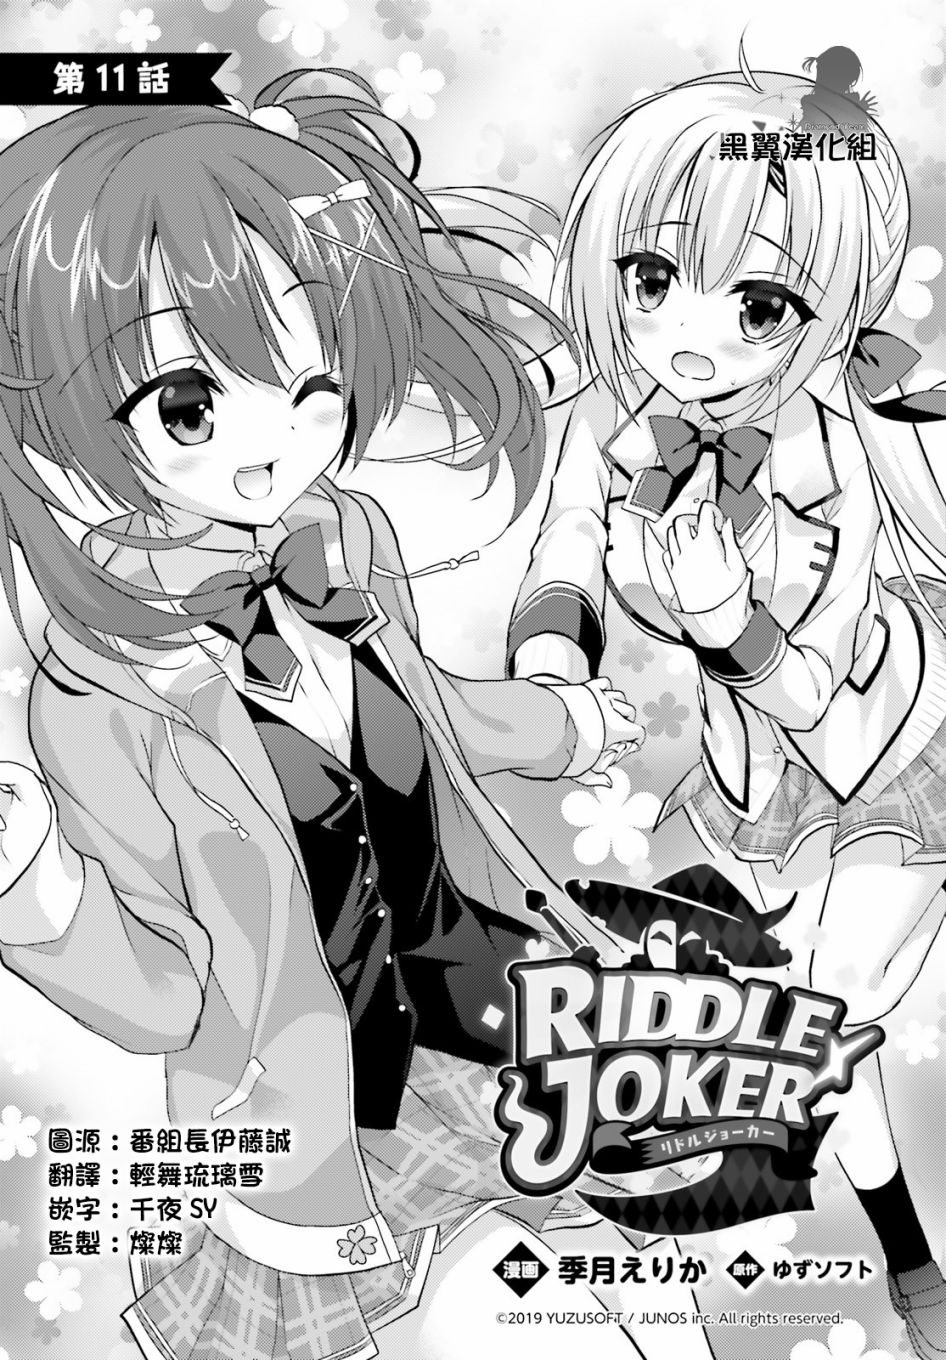 Riddle Joker漫画单行本第11话 漫画db